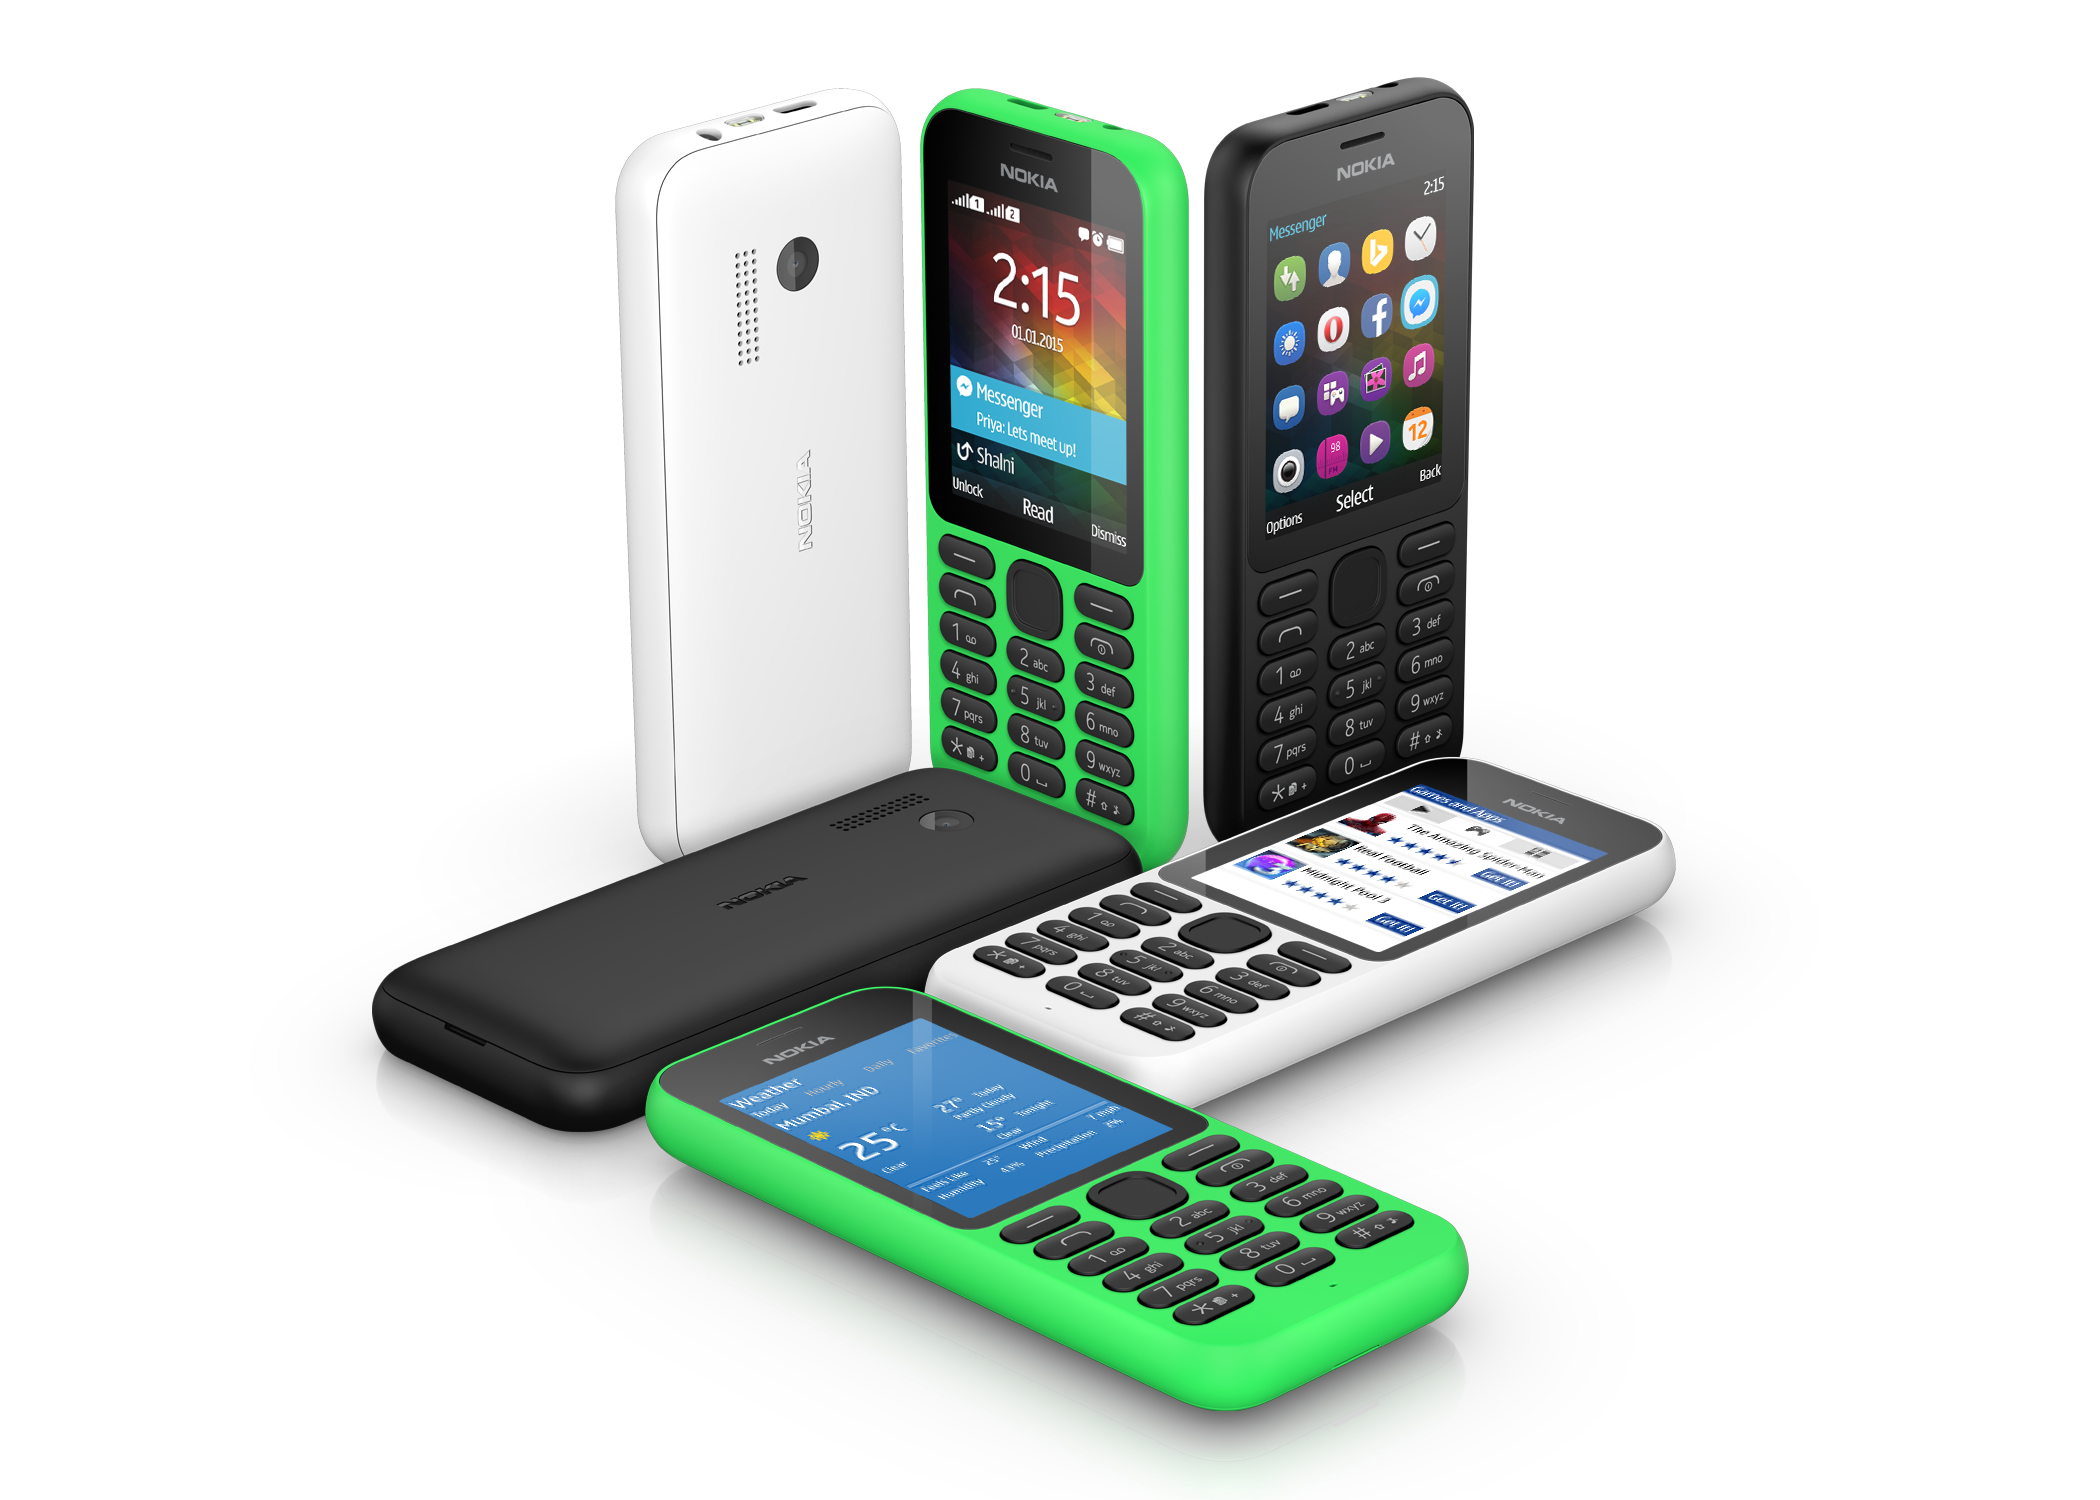 Nokia mobile phone. Нокиа 215. Телефон Nokia 215. Nokia 215 Green. Чехол для Nokia 215 -4g.